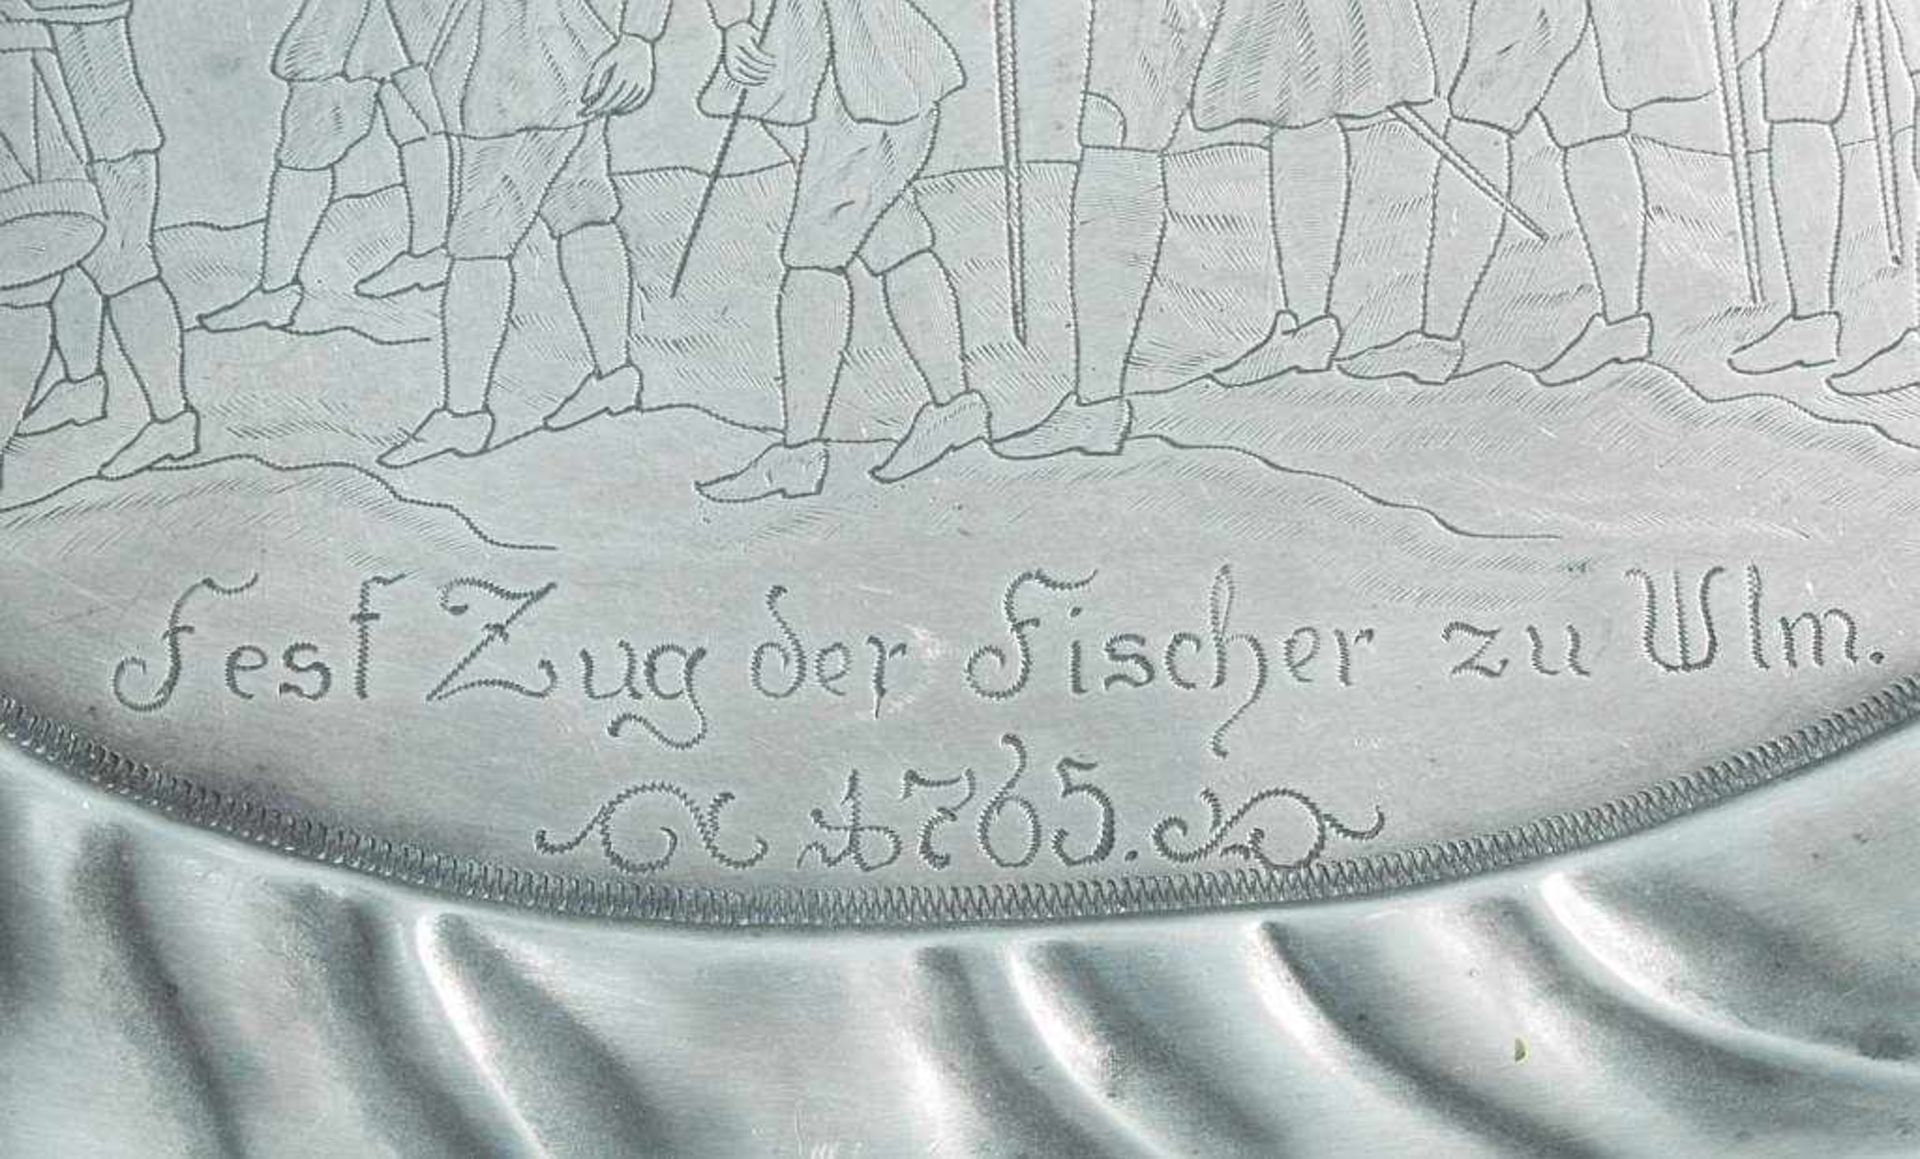 Zinntablett Fest Zug der Fischer zu Ulm 1765. Zinntablett Fest Zug der Fischer zu Ulm 1765. - Bild 3 aus 4